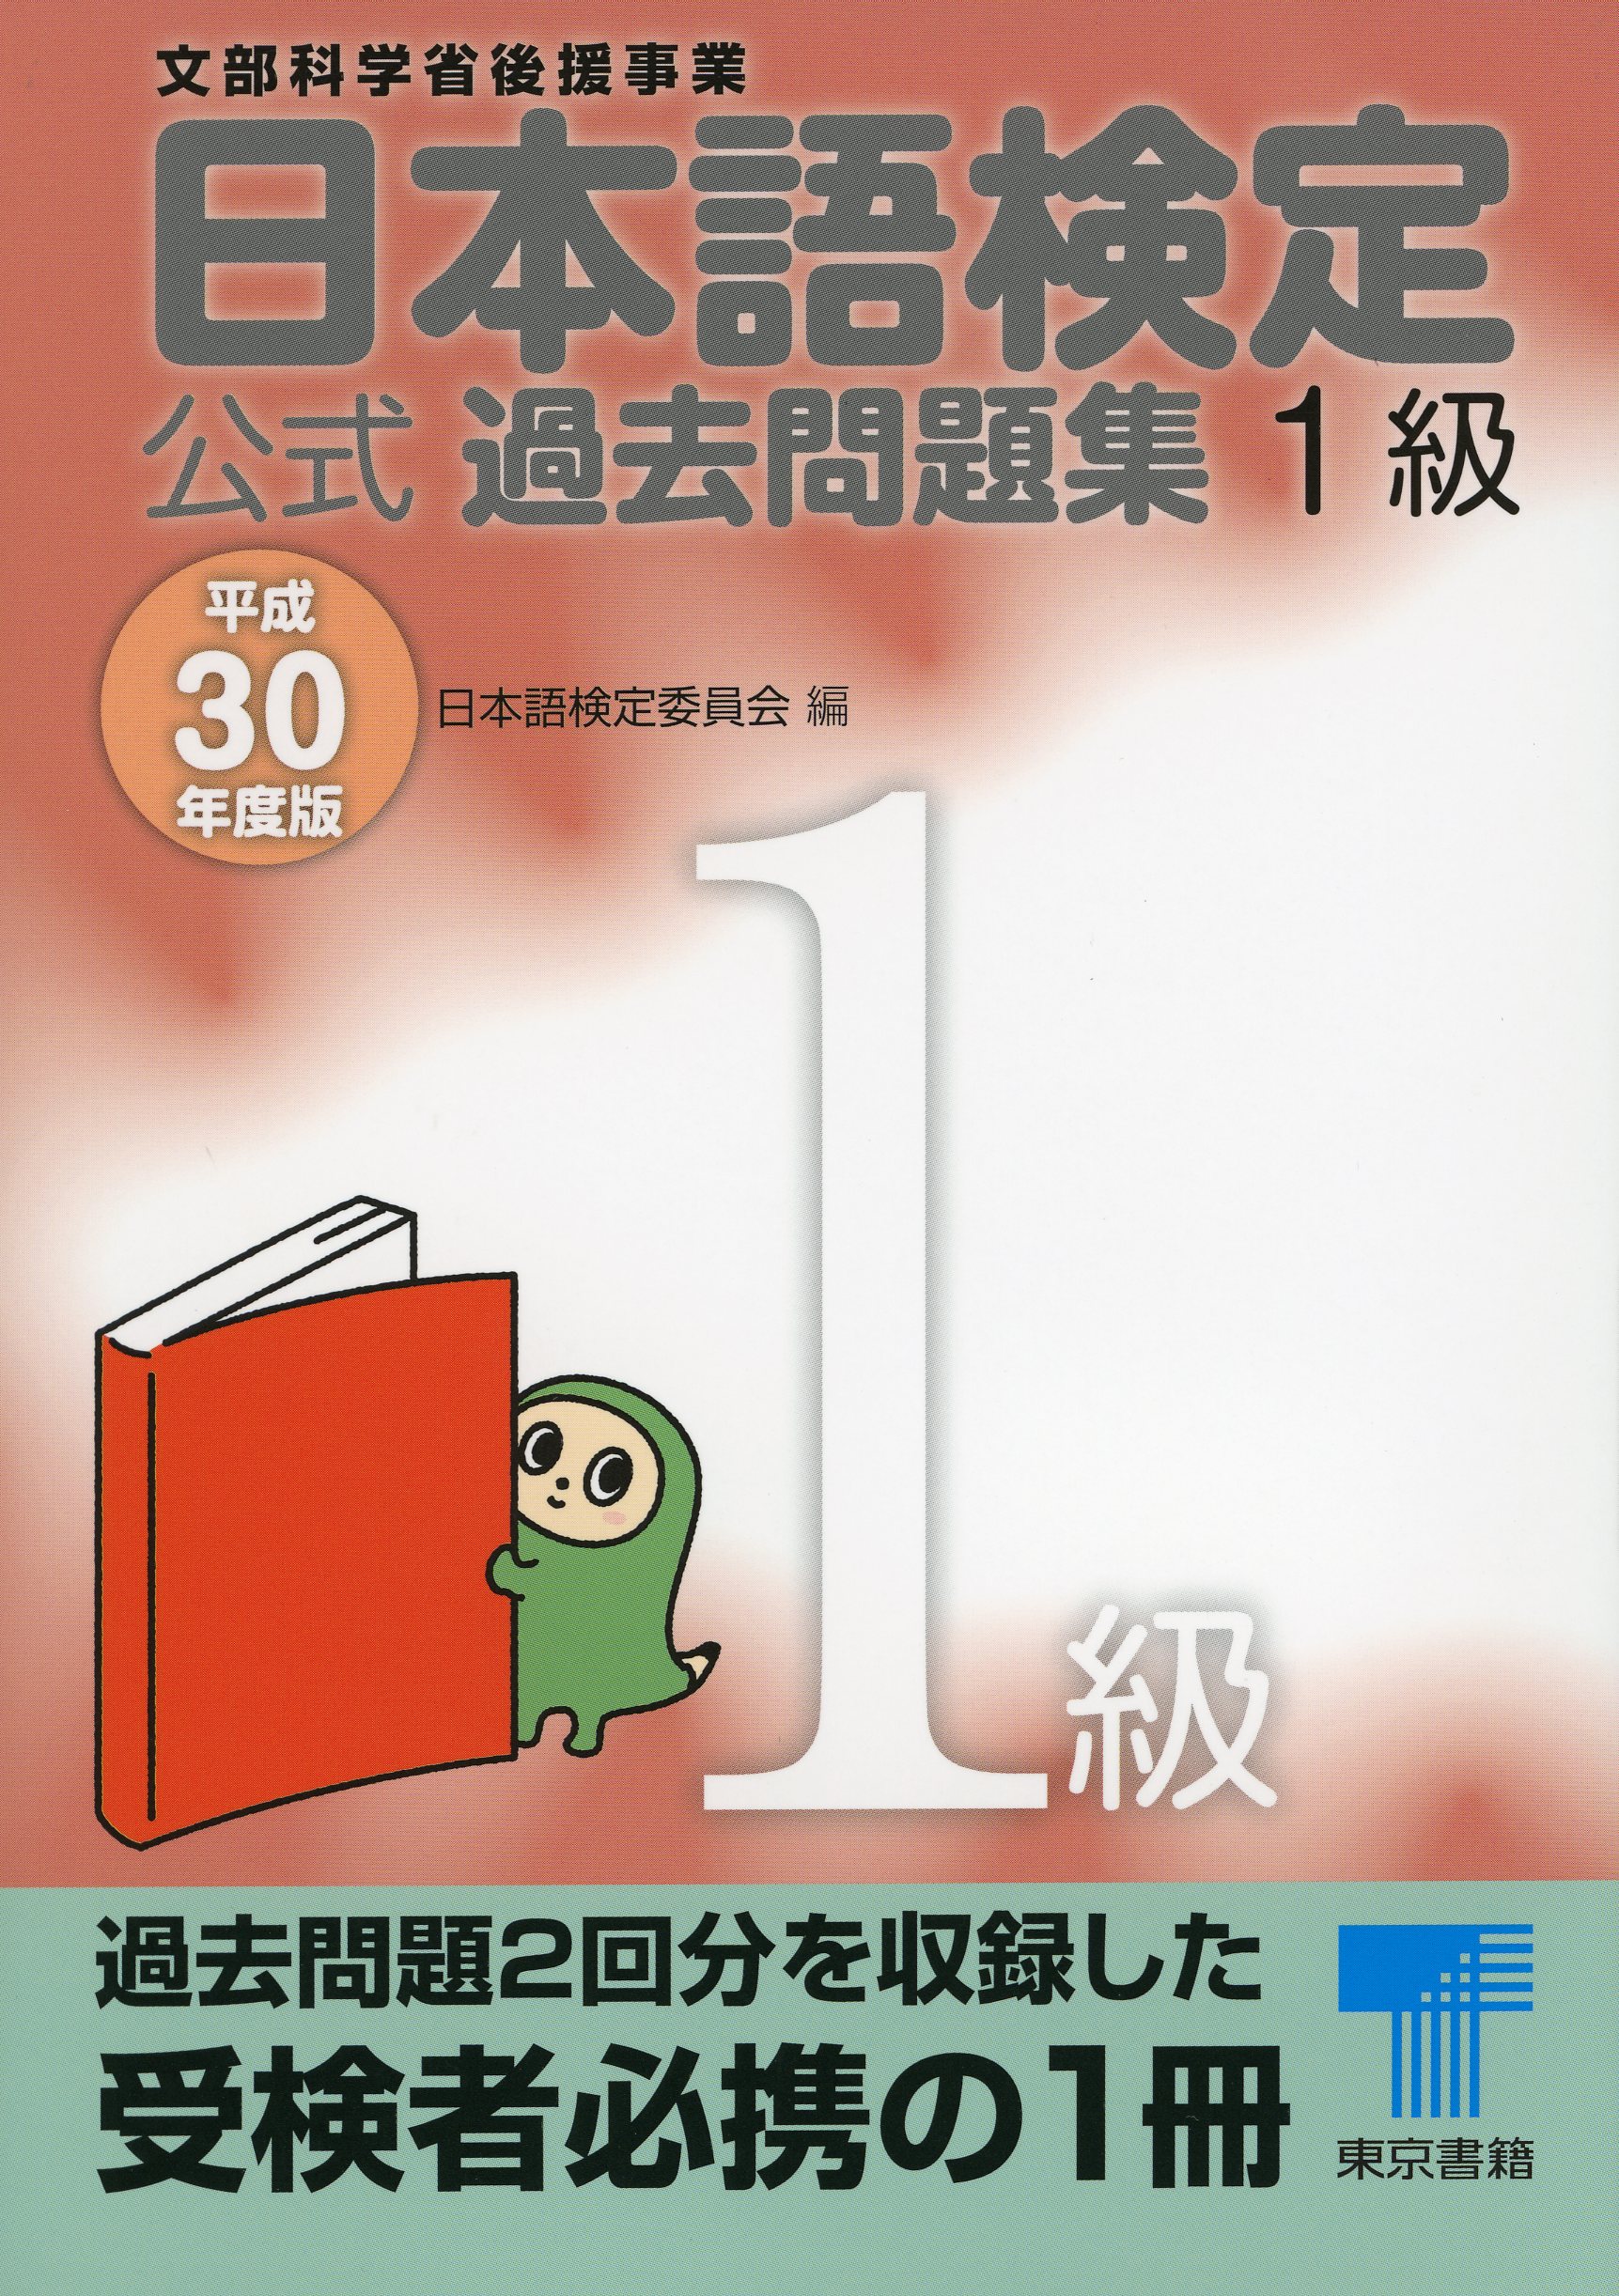 日本語検定 公式 過去問題集 １級 平成30年度版(書籍) - 電子書籍 | U ...